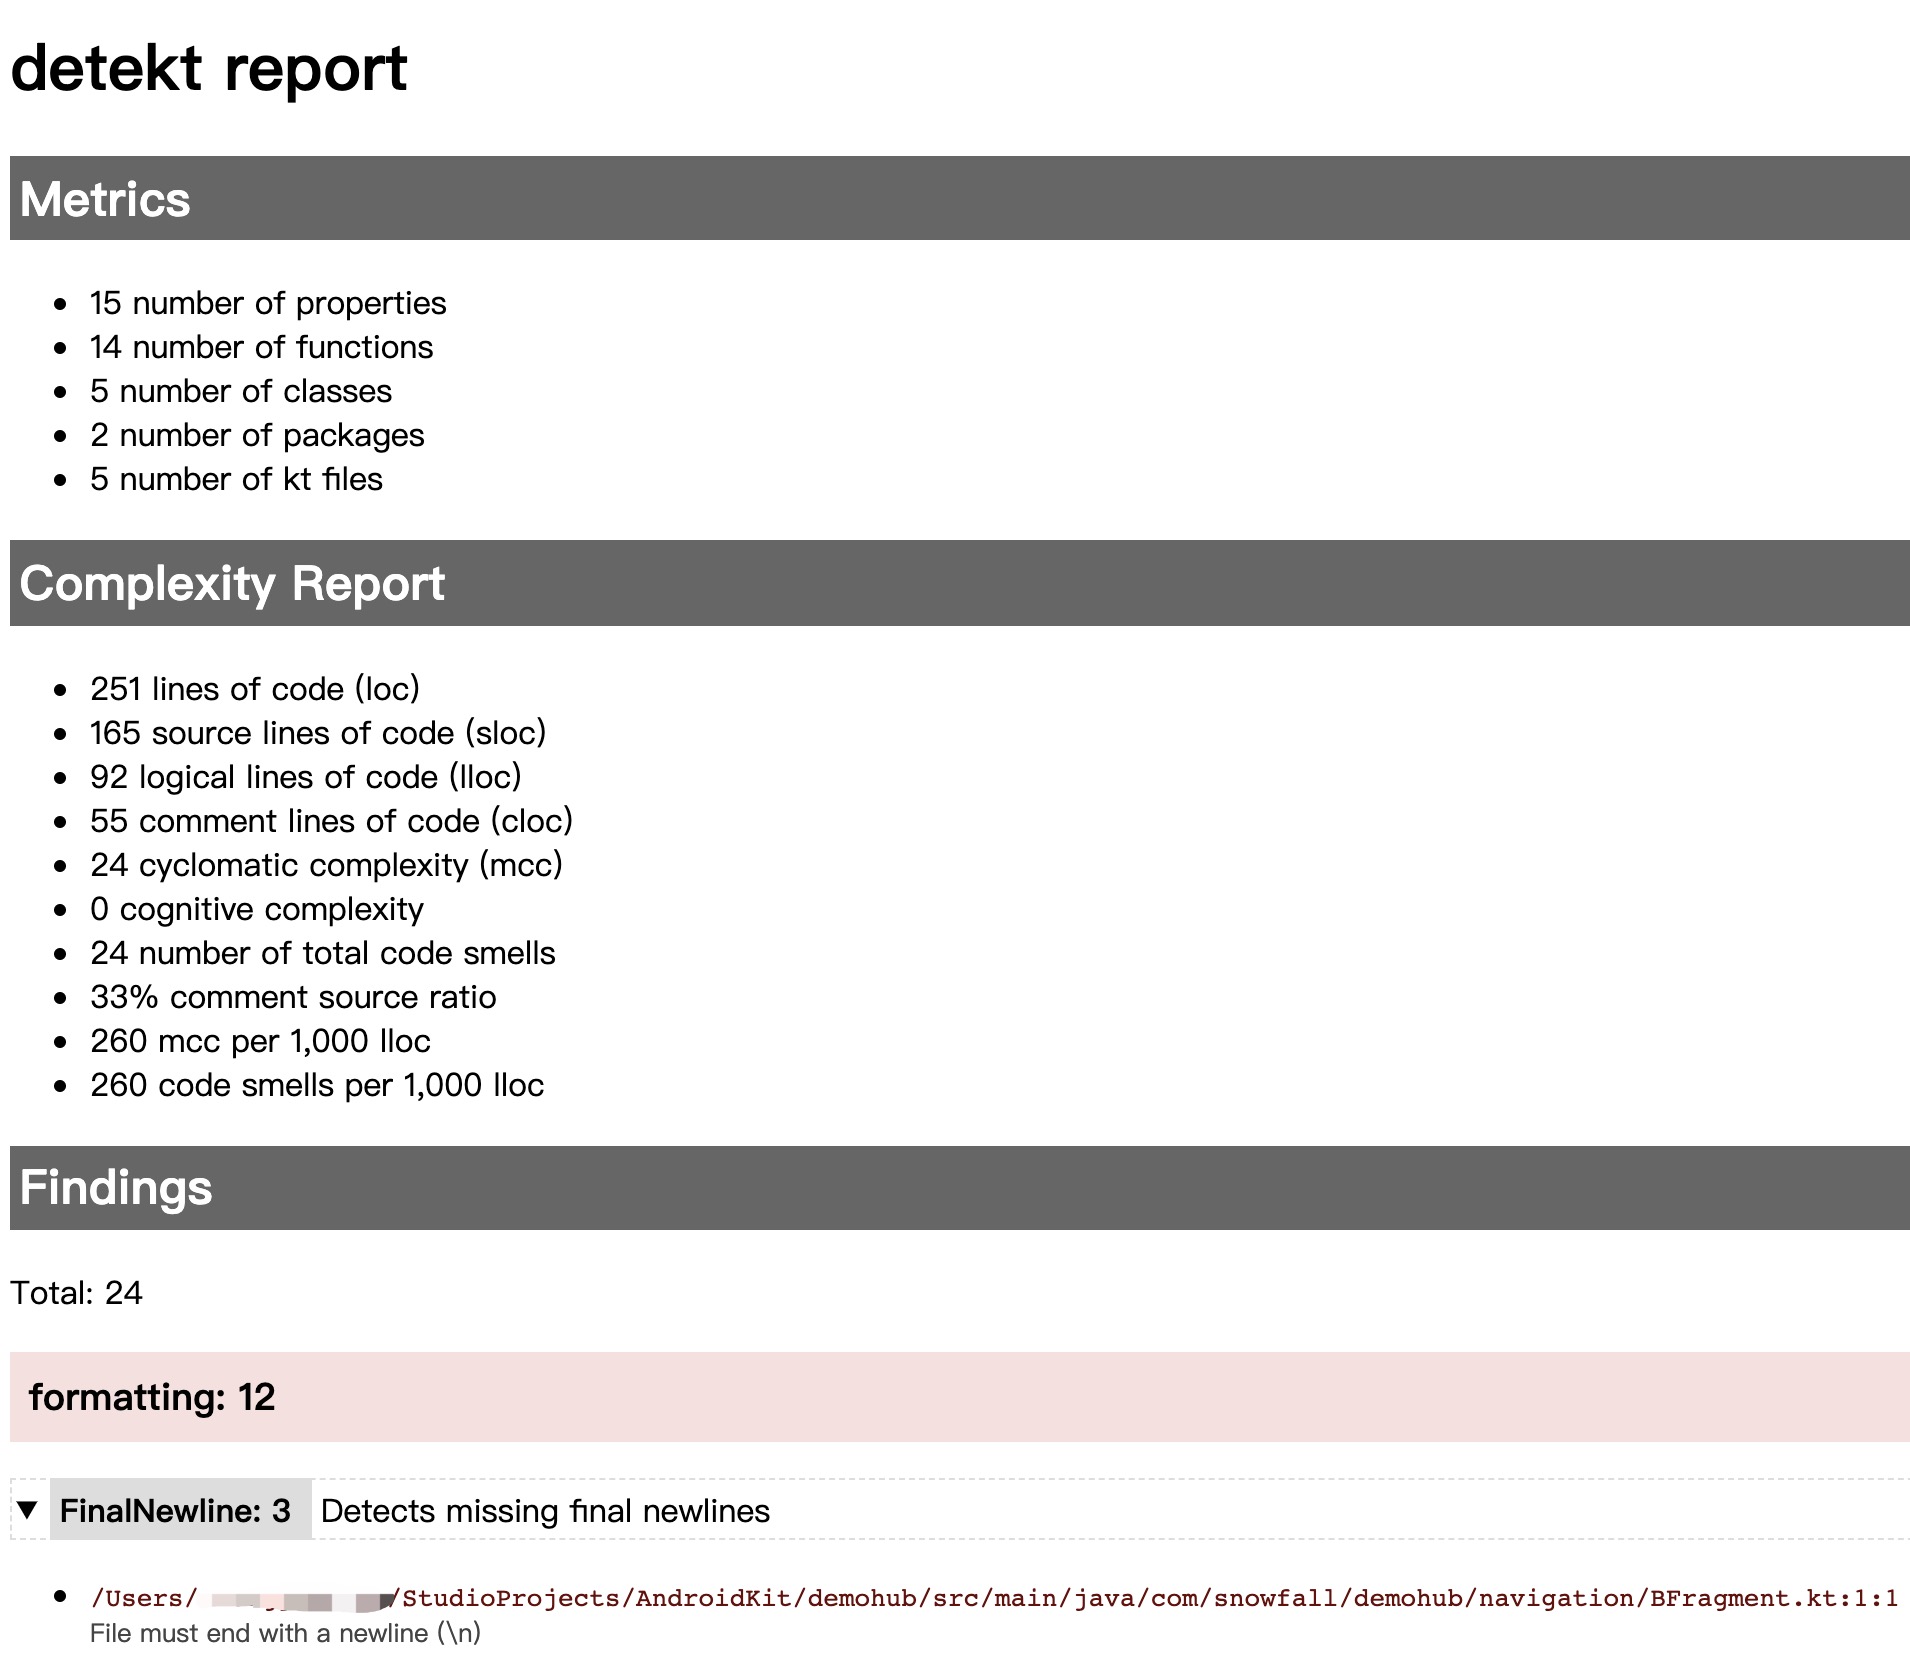 detekt_report_html